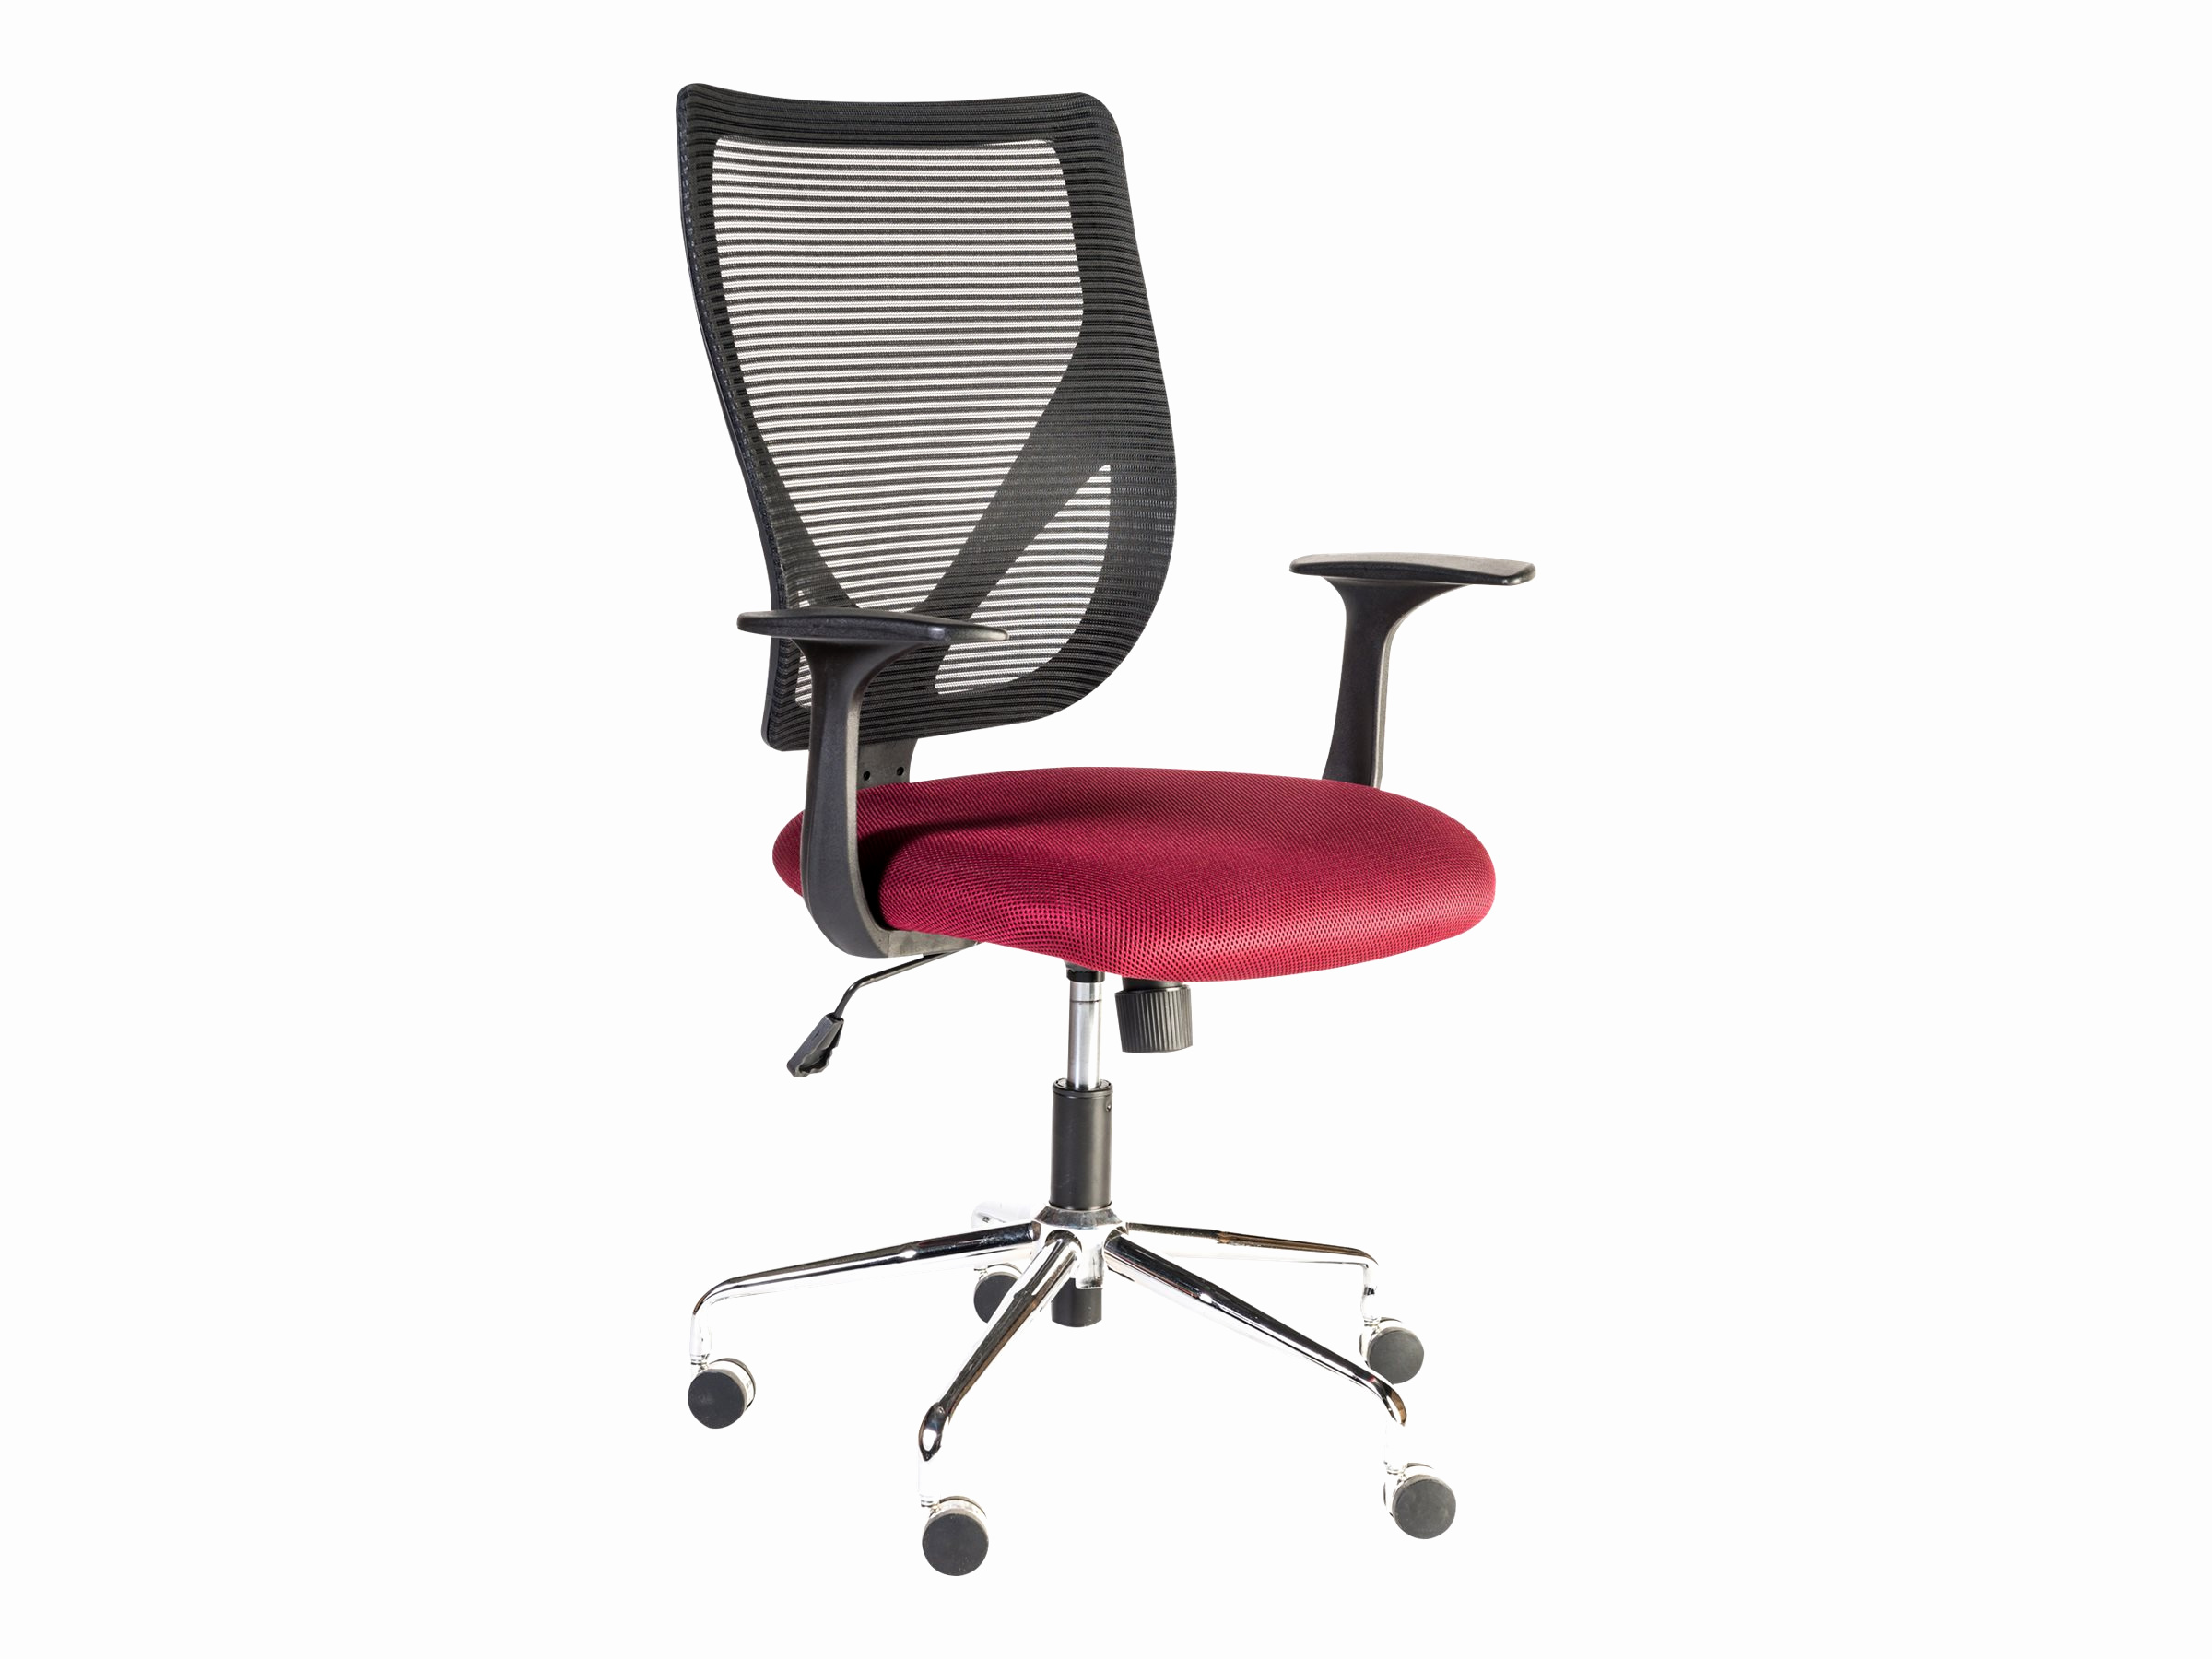 fauteuil mobilier de france unique fauteuil de bureau accoudoirs fixes existe en differents coloris of fauteuil mobilier de france